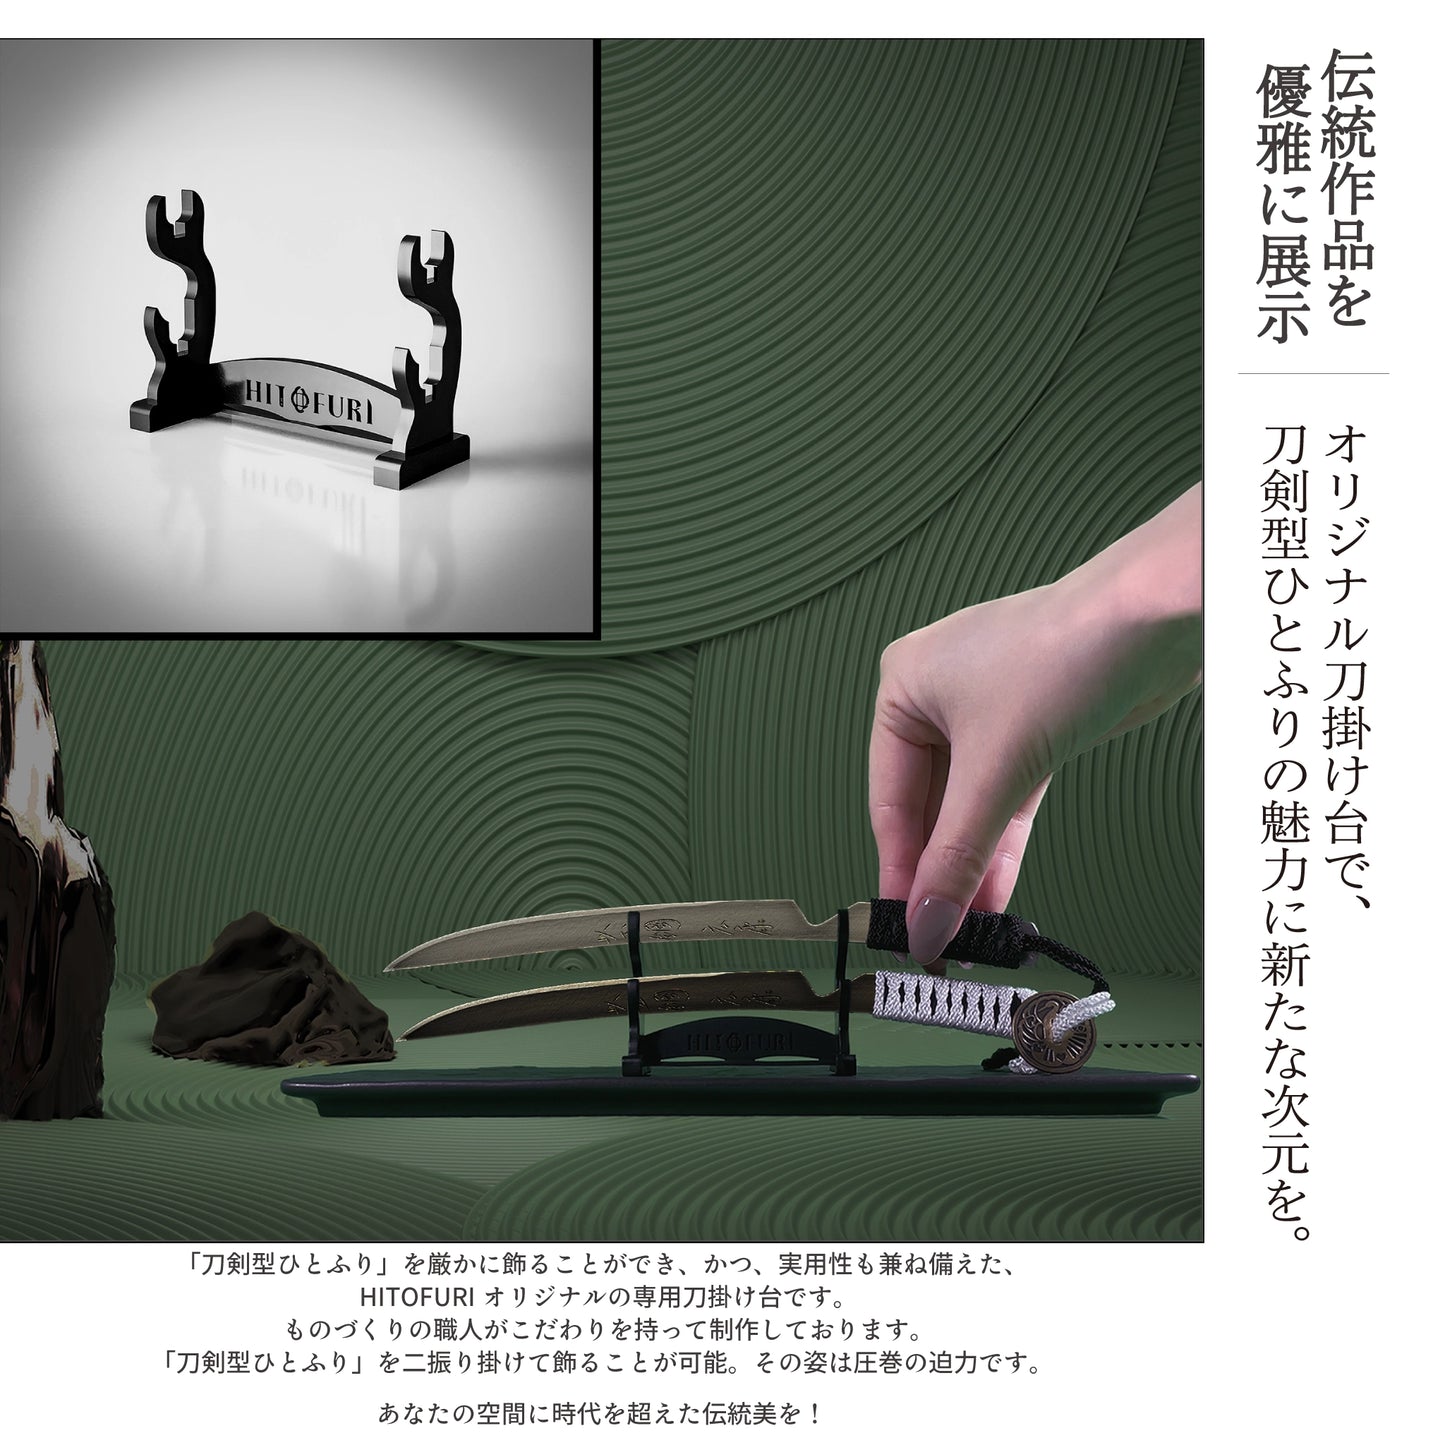 豪華BOX仕様 この広告限定特価!! 20%割引「お守り刀」セット - HITOFURI プロジェクト